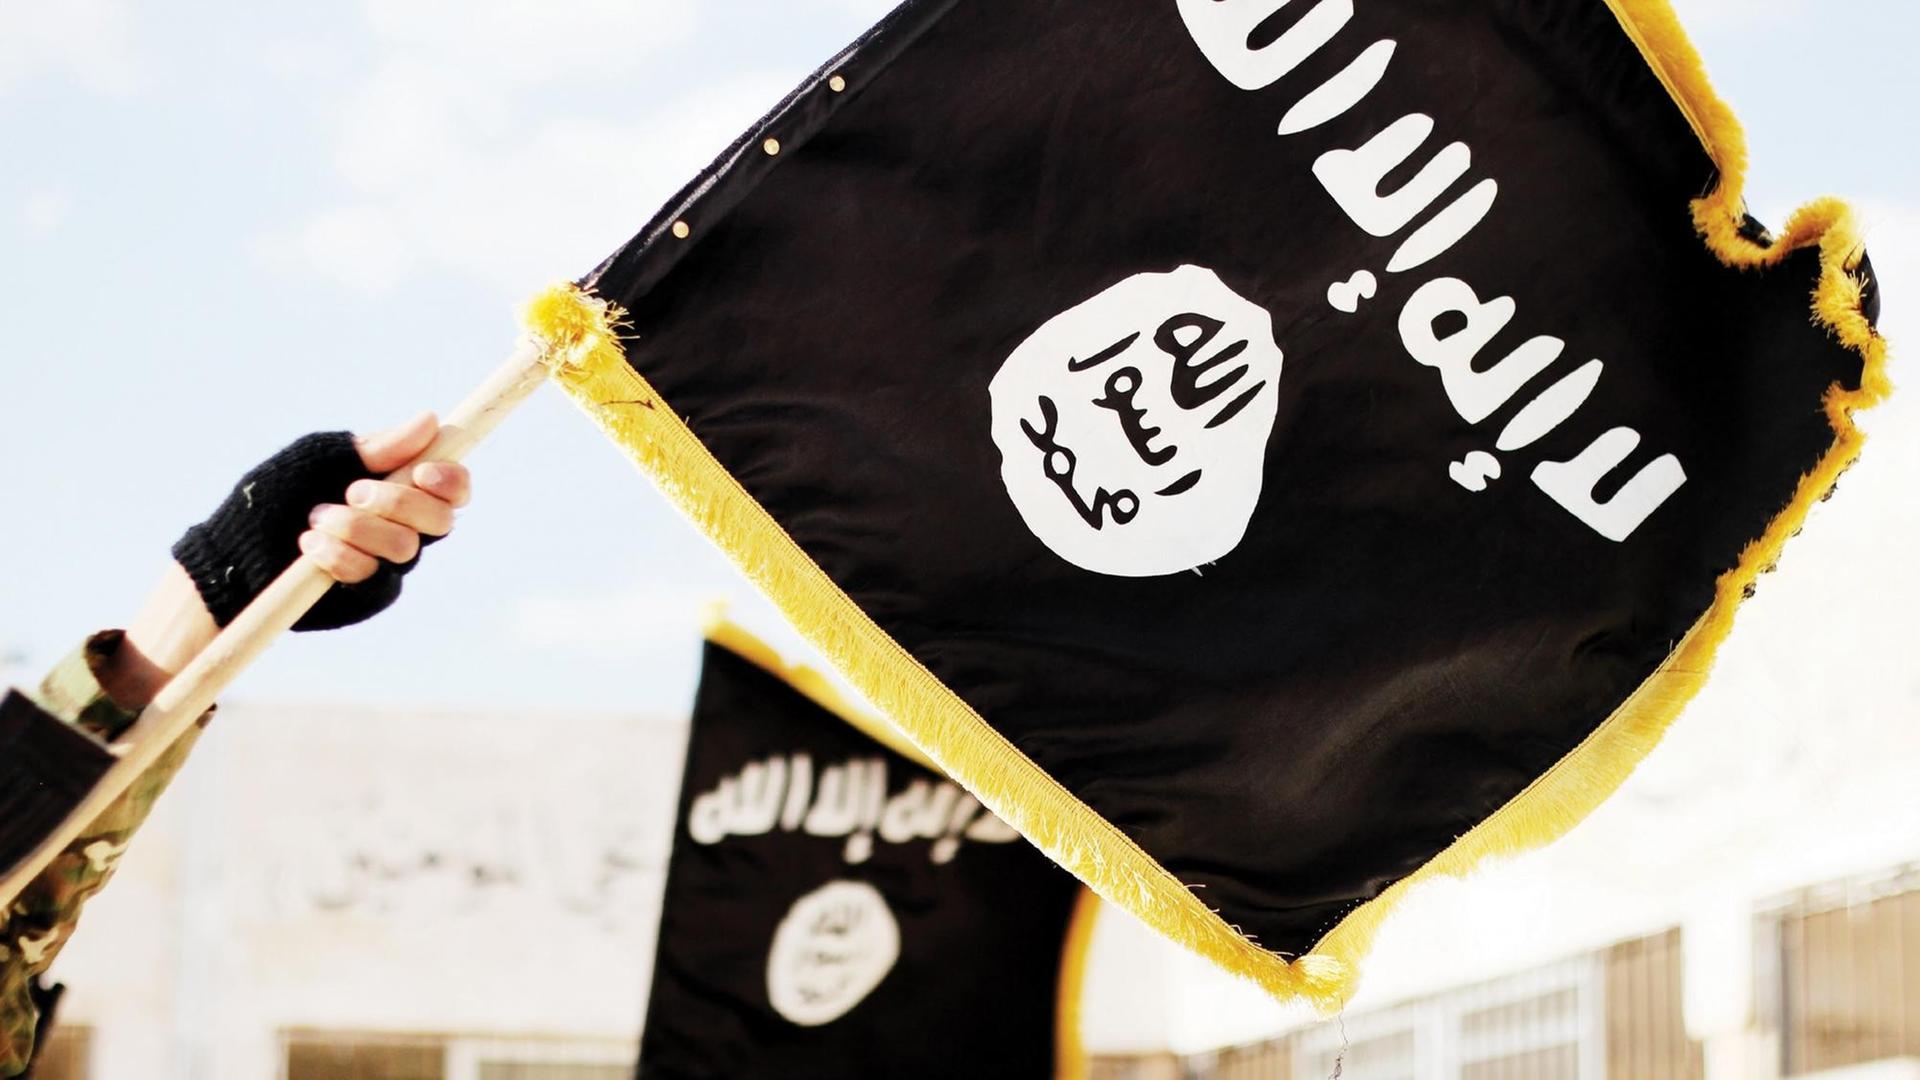 Eine schwarze Flagge mit dem Logo der Terrormiliz Islamischer Staat.